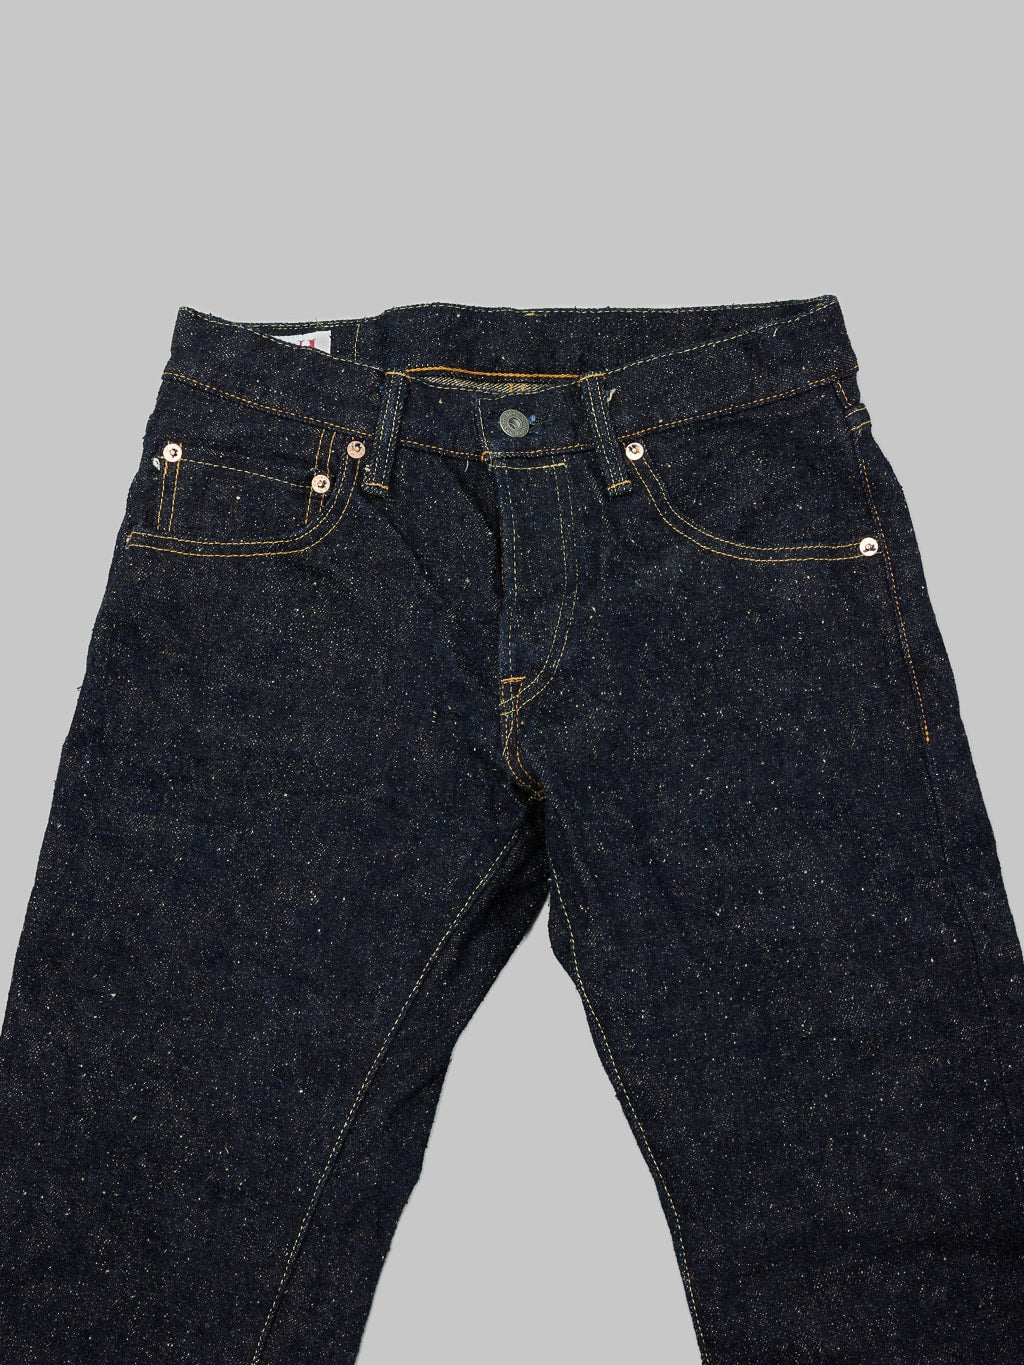 ONI Denim 622 Asphalt 20oz relaxed tapered Jeans waist